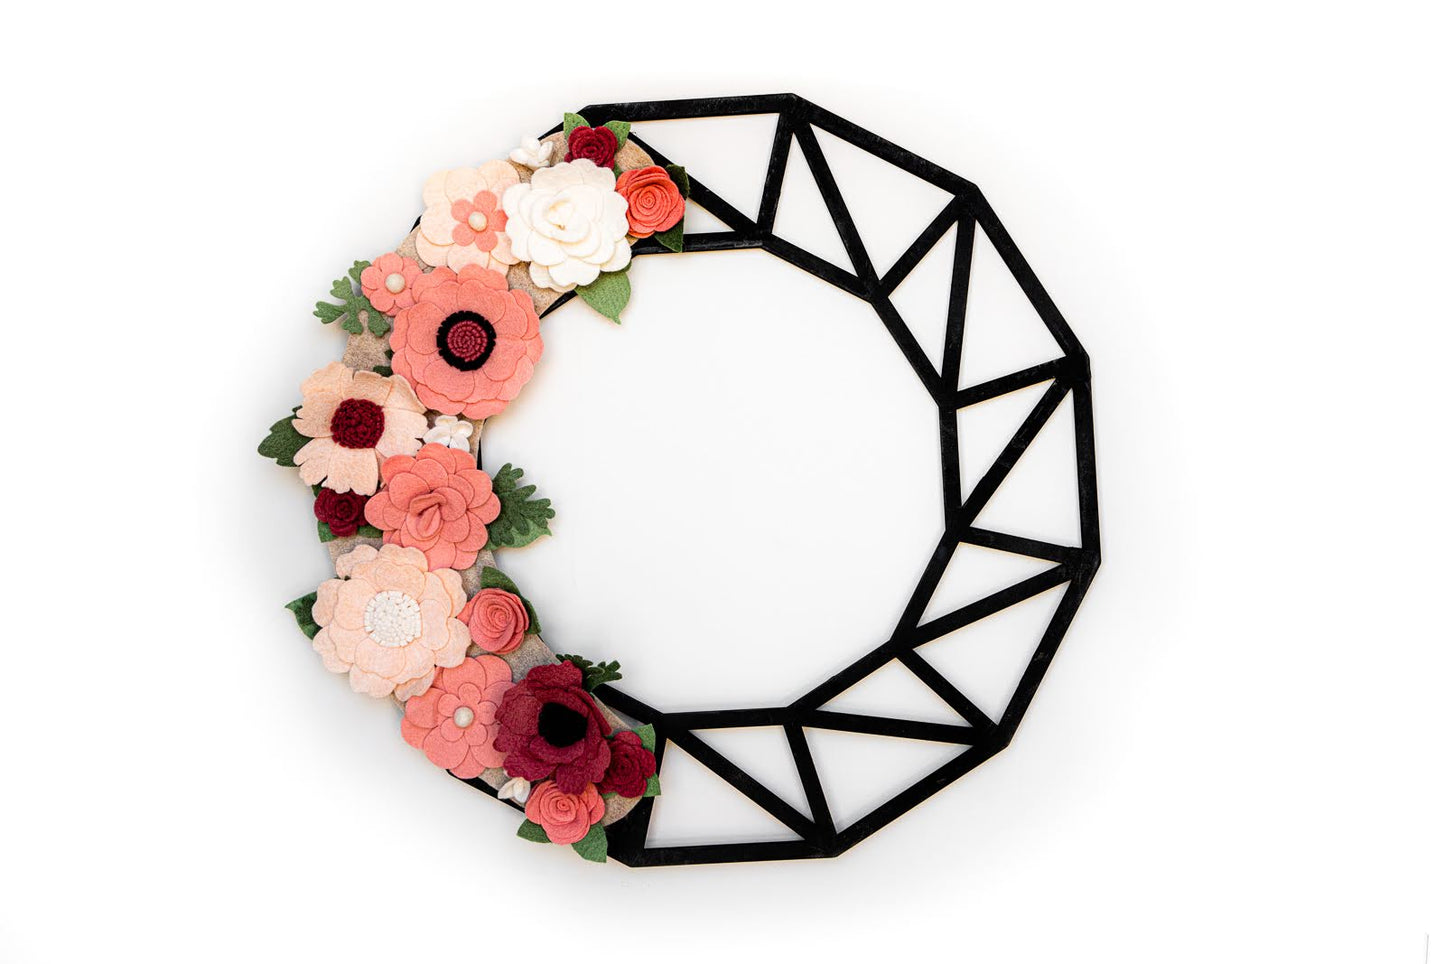 18" Geometric Wreath Base | Black